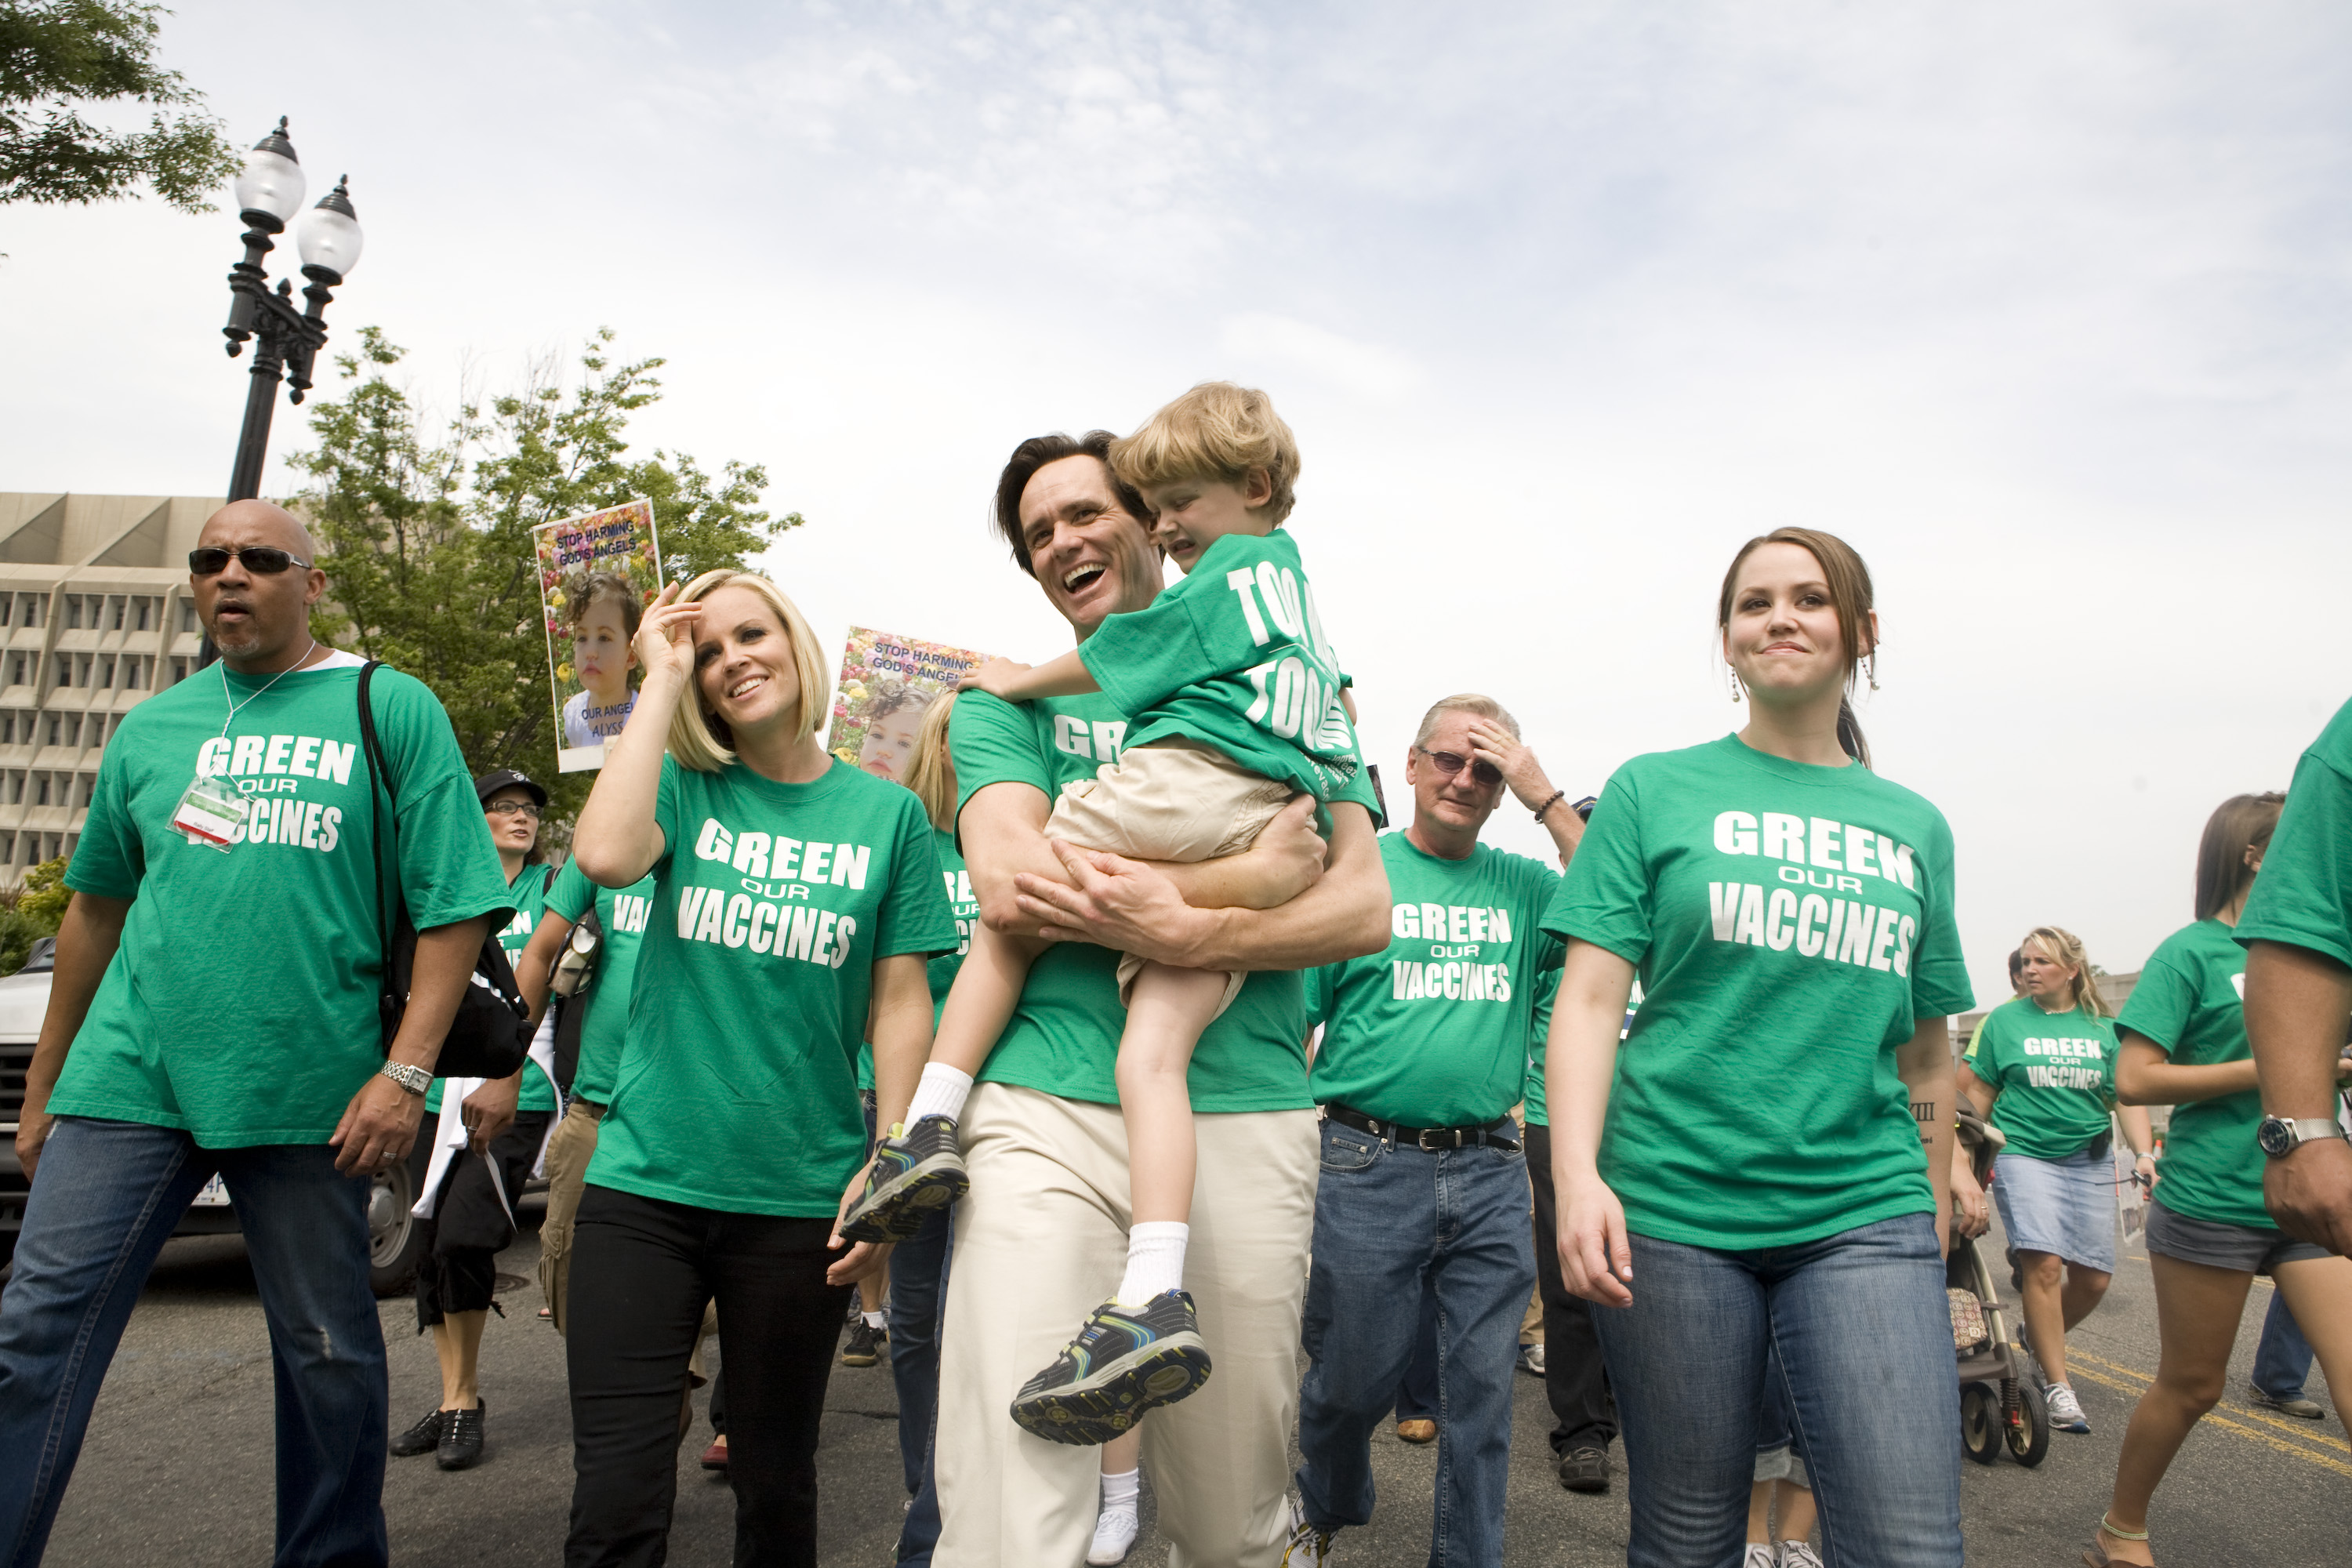 El actor Jim Carrey sostiene en brazos a Evan Asher, hijo de la actriz Jenny McCarthy, durante una marcha en favor de vacunas más sanas, el 4 de junio de 2008, en Washington, DC. | Foto: Getty Images